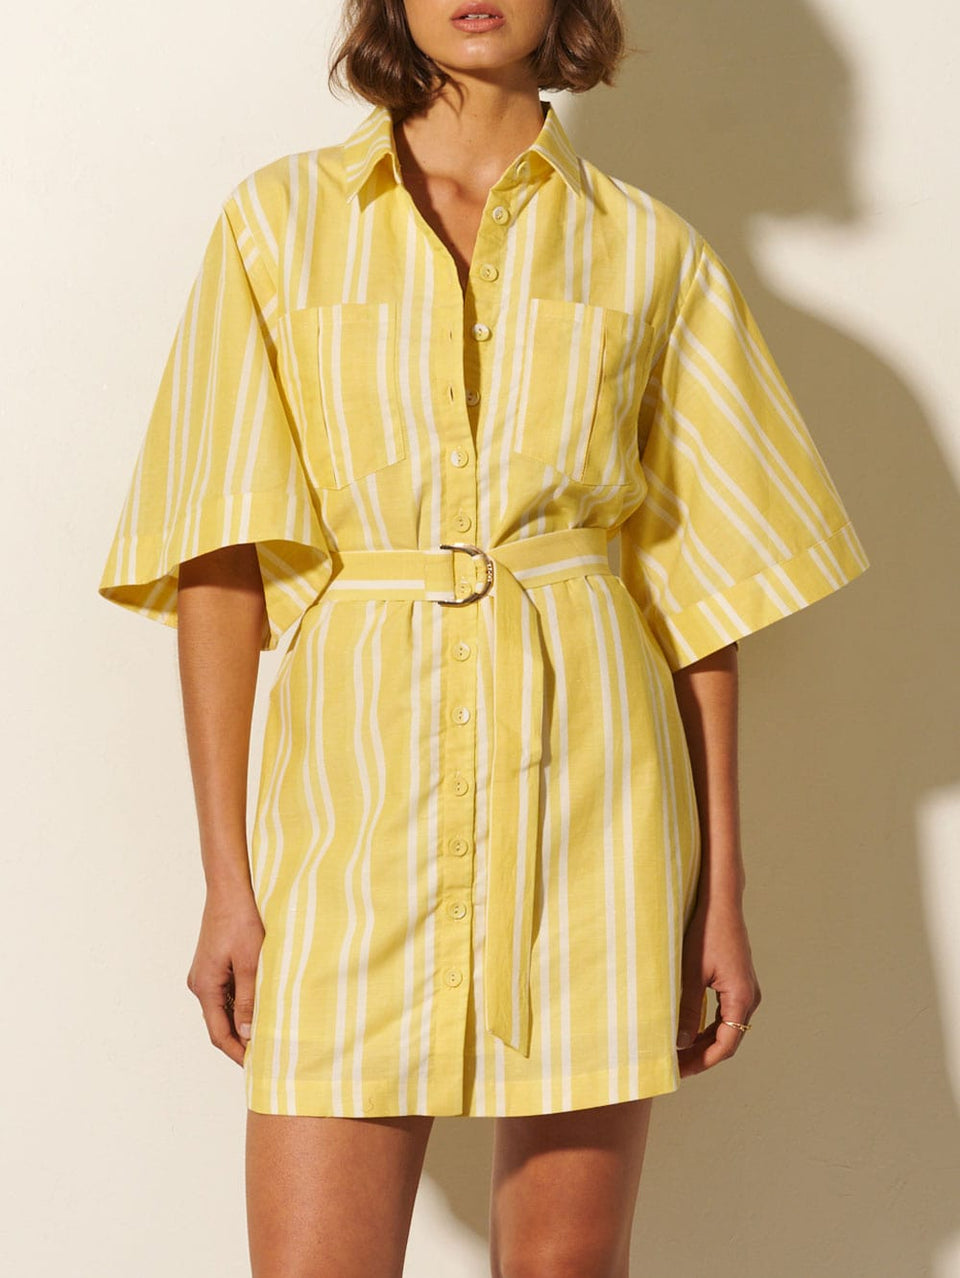 Lola Shirt Dress KIVARI | Model wears yellow and white striped shirt dress close up